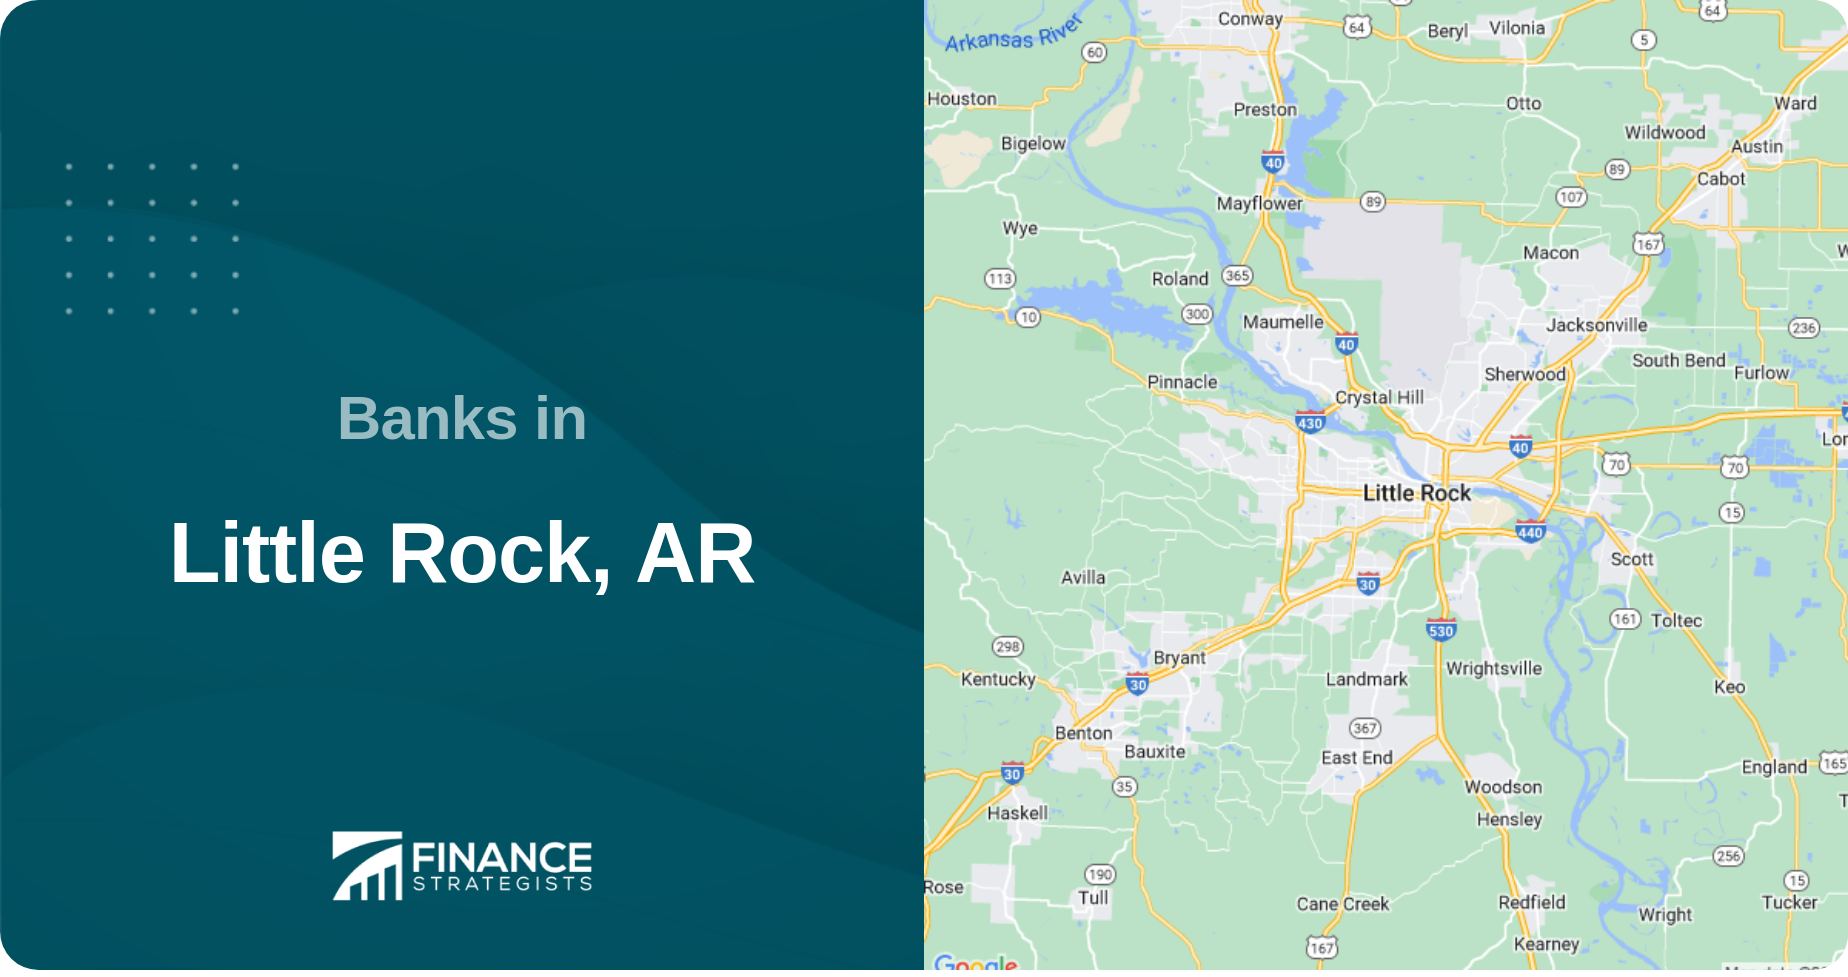 Banks in Little Rock, AR